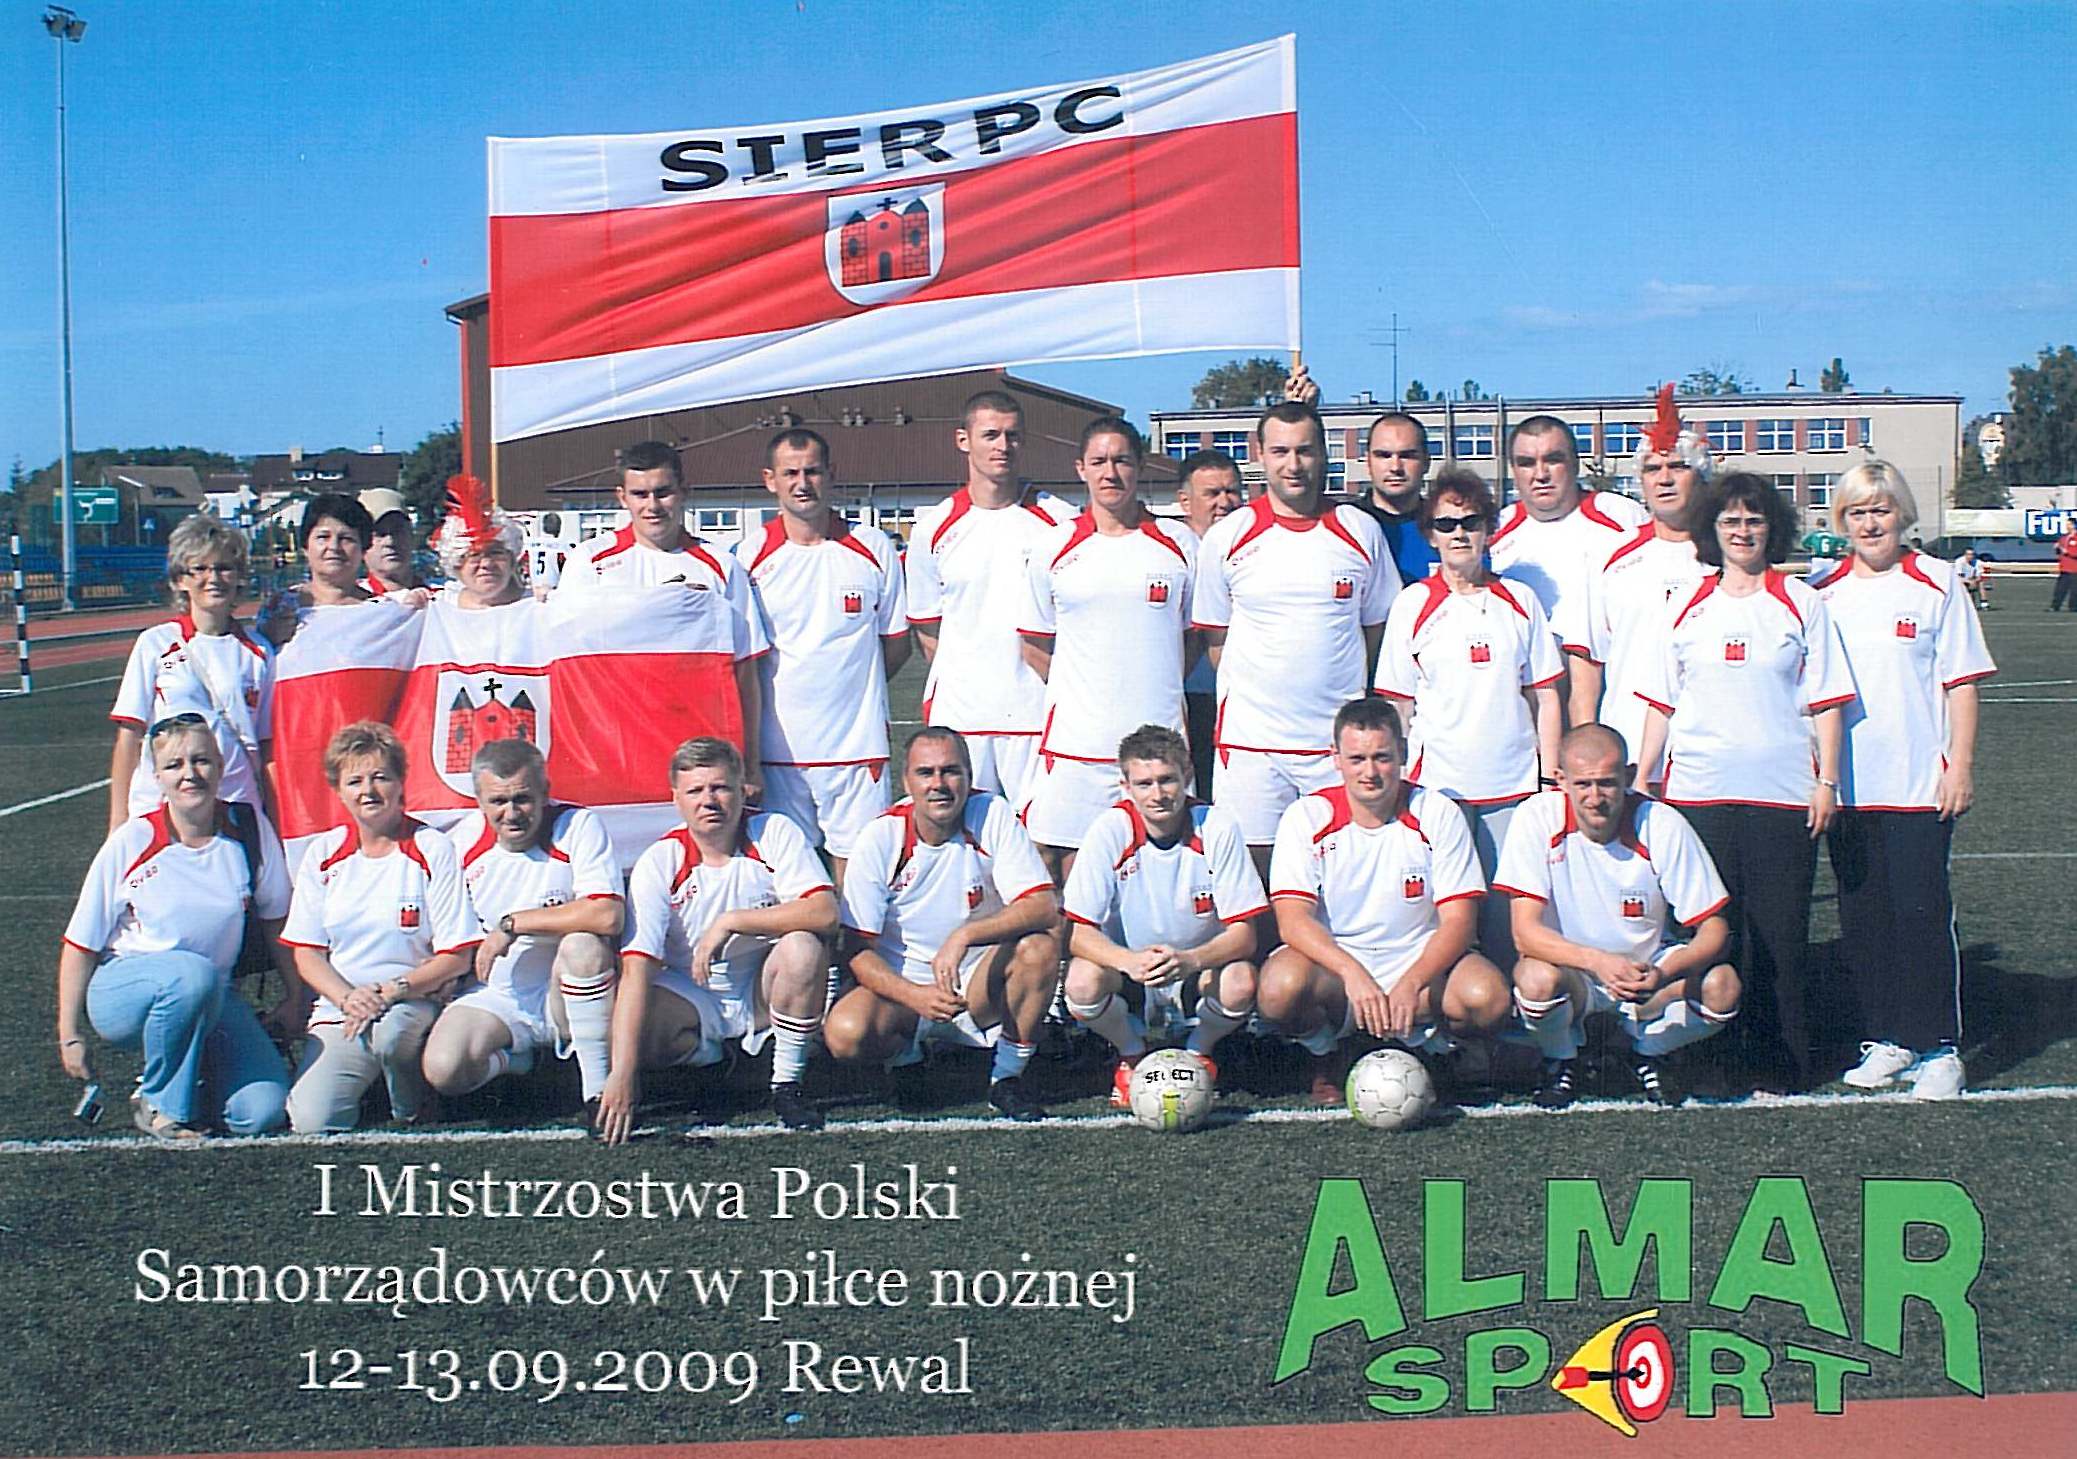 I Mistrzostwa Polski Samorządowców w Piłce Nożnej, Rewal 12-13.09.2009 r.